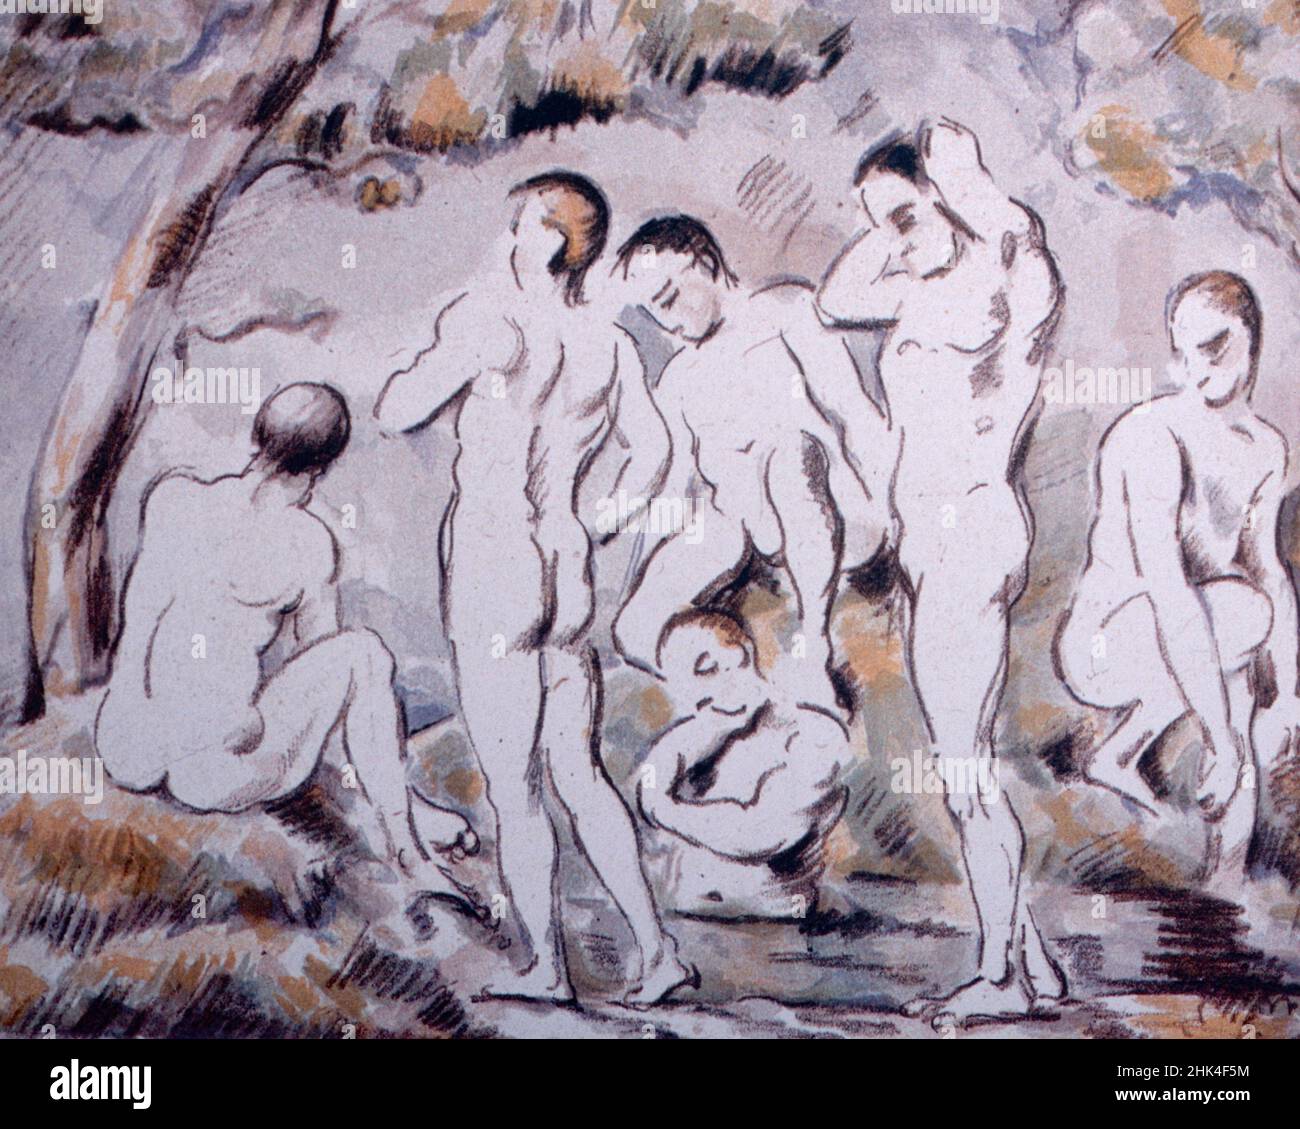 The Bathers, pintura del artista francés Paul Cezanne, 1897 Foto de stock